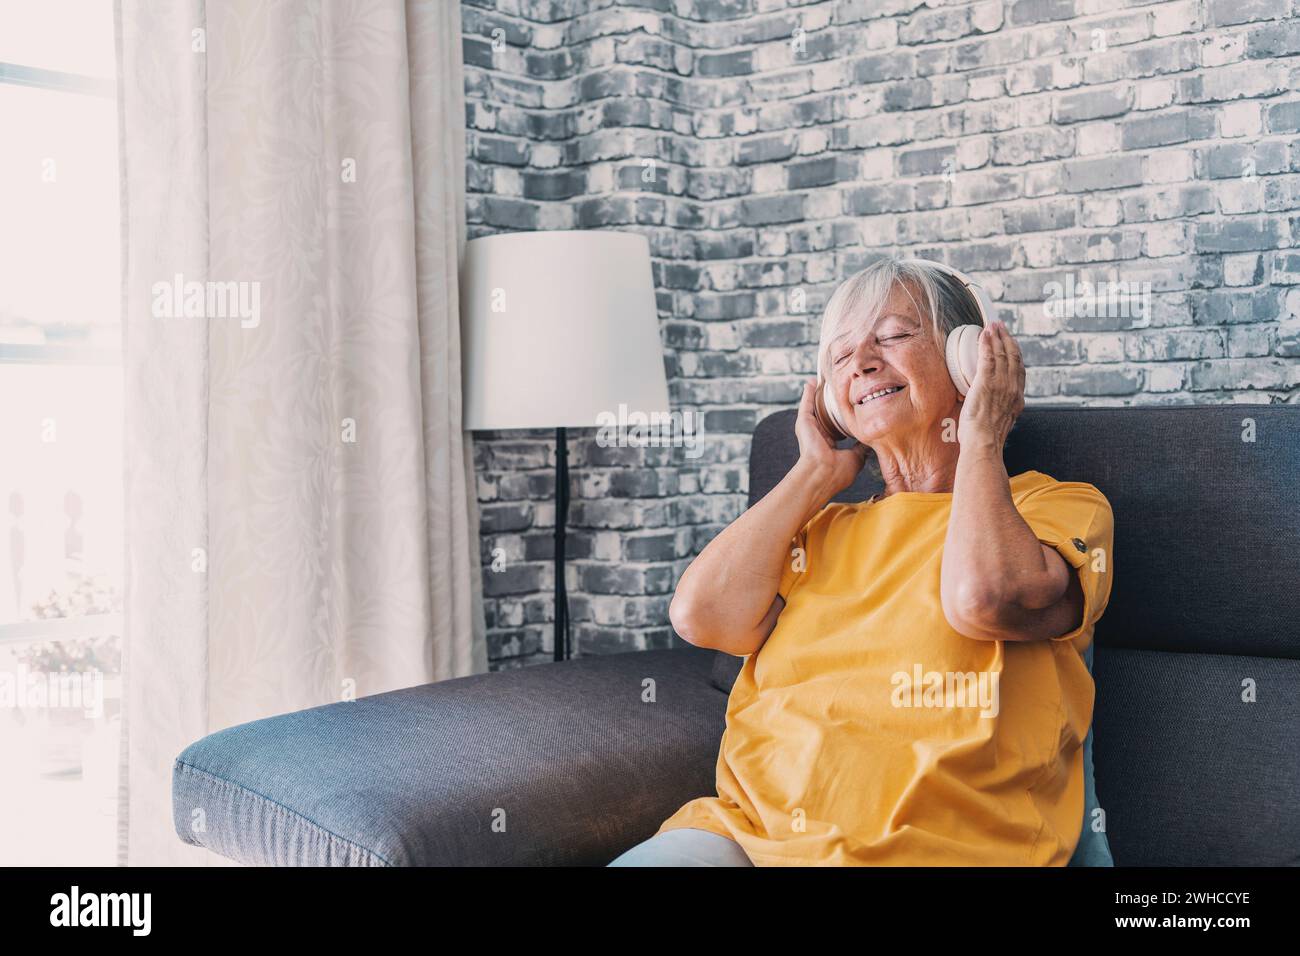 Seitenansicht glückliche alte, reife pensionierte Frau, die populäre Musik in Kopfhörern hört, sich allein auf einem gemütlichen Sofa entspannt, friedliche, unbeschwerte Wochenendzeit allein zu Hause genießt, stressfreie Freizeitbeschäftigung. Stockfoto